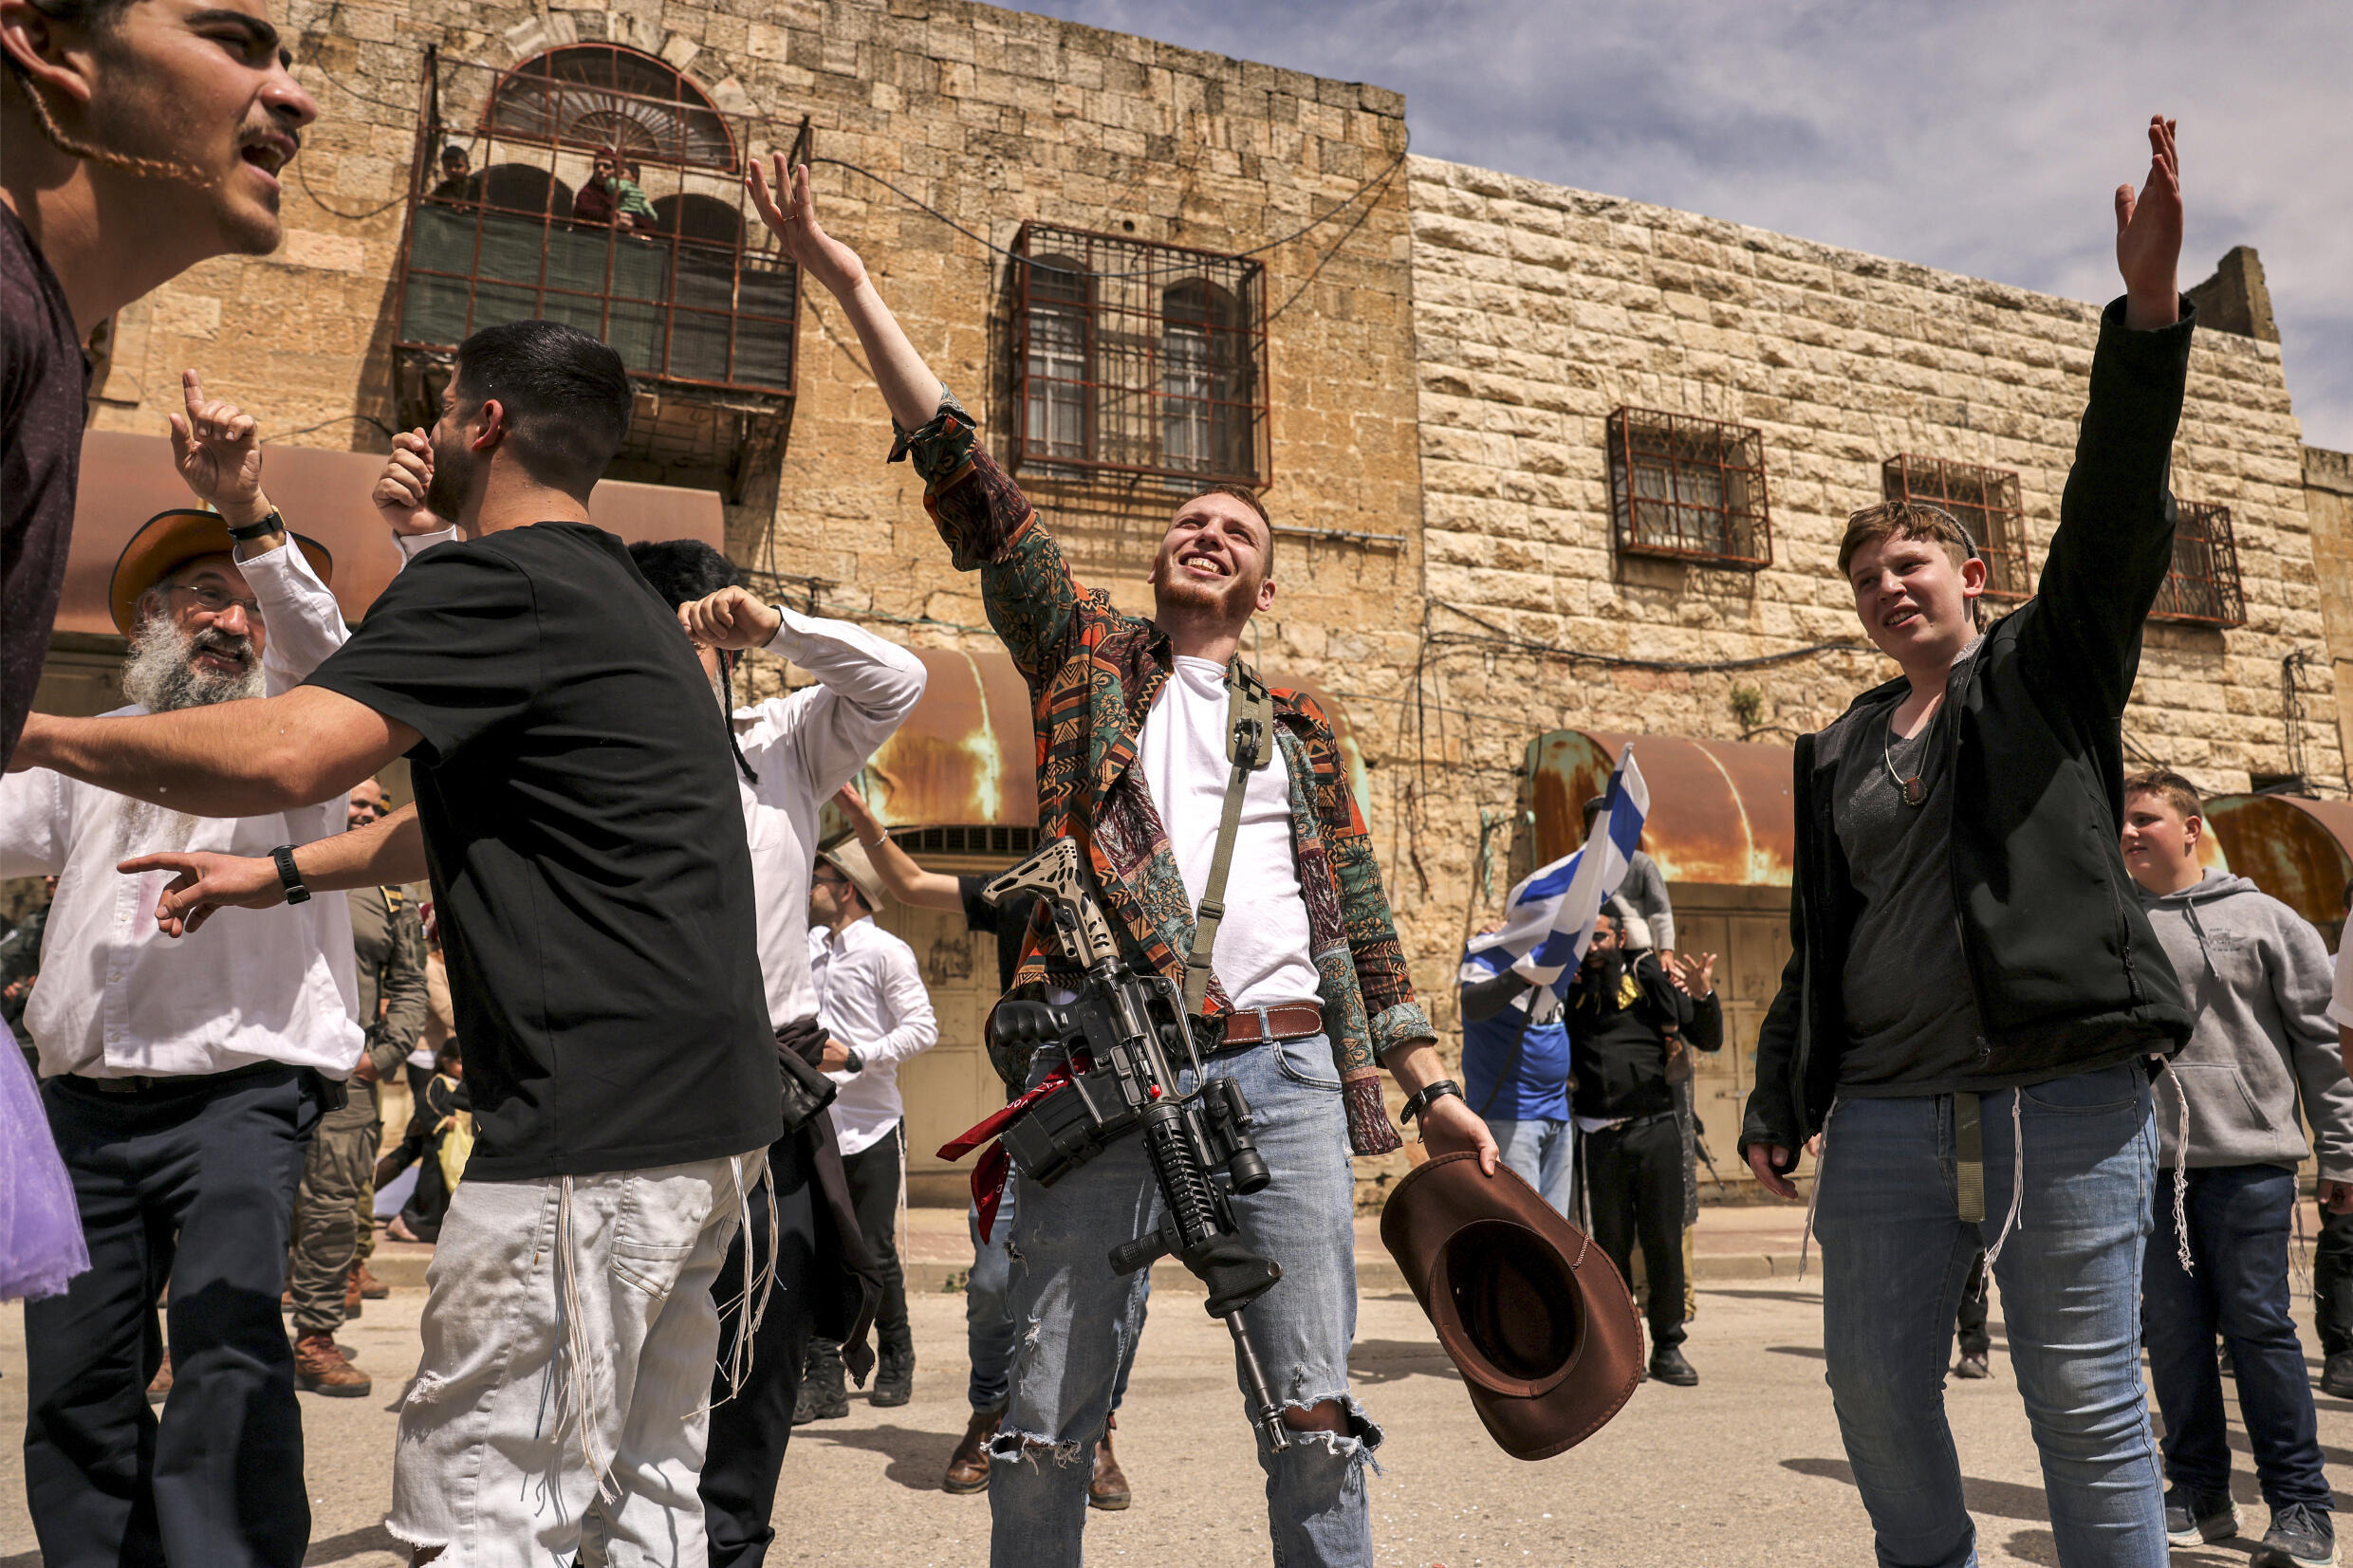 Israelische Siedler in Purim-Kostümen auf der Al-Shuhada-Straße, die in der geteilten Stadt Hebron im israelisch besetzten Westjordanland während der Feierlichkeiten zum jüdischen Feiertag Purim weitgehend für Palästinenser gesperrt ist